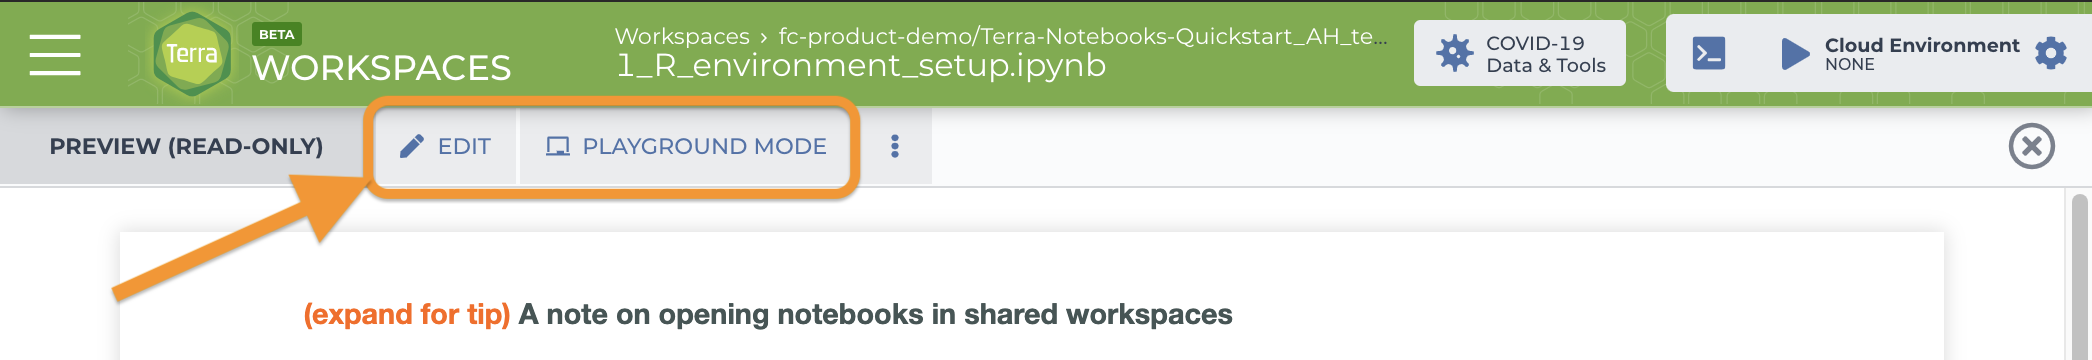 Notebooks-QuickStart_Open-in-edit-mode_Screen_shot.png